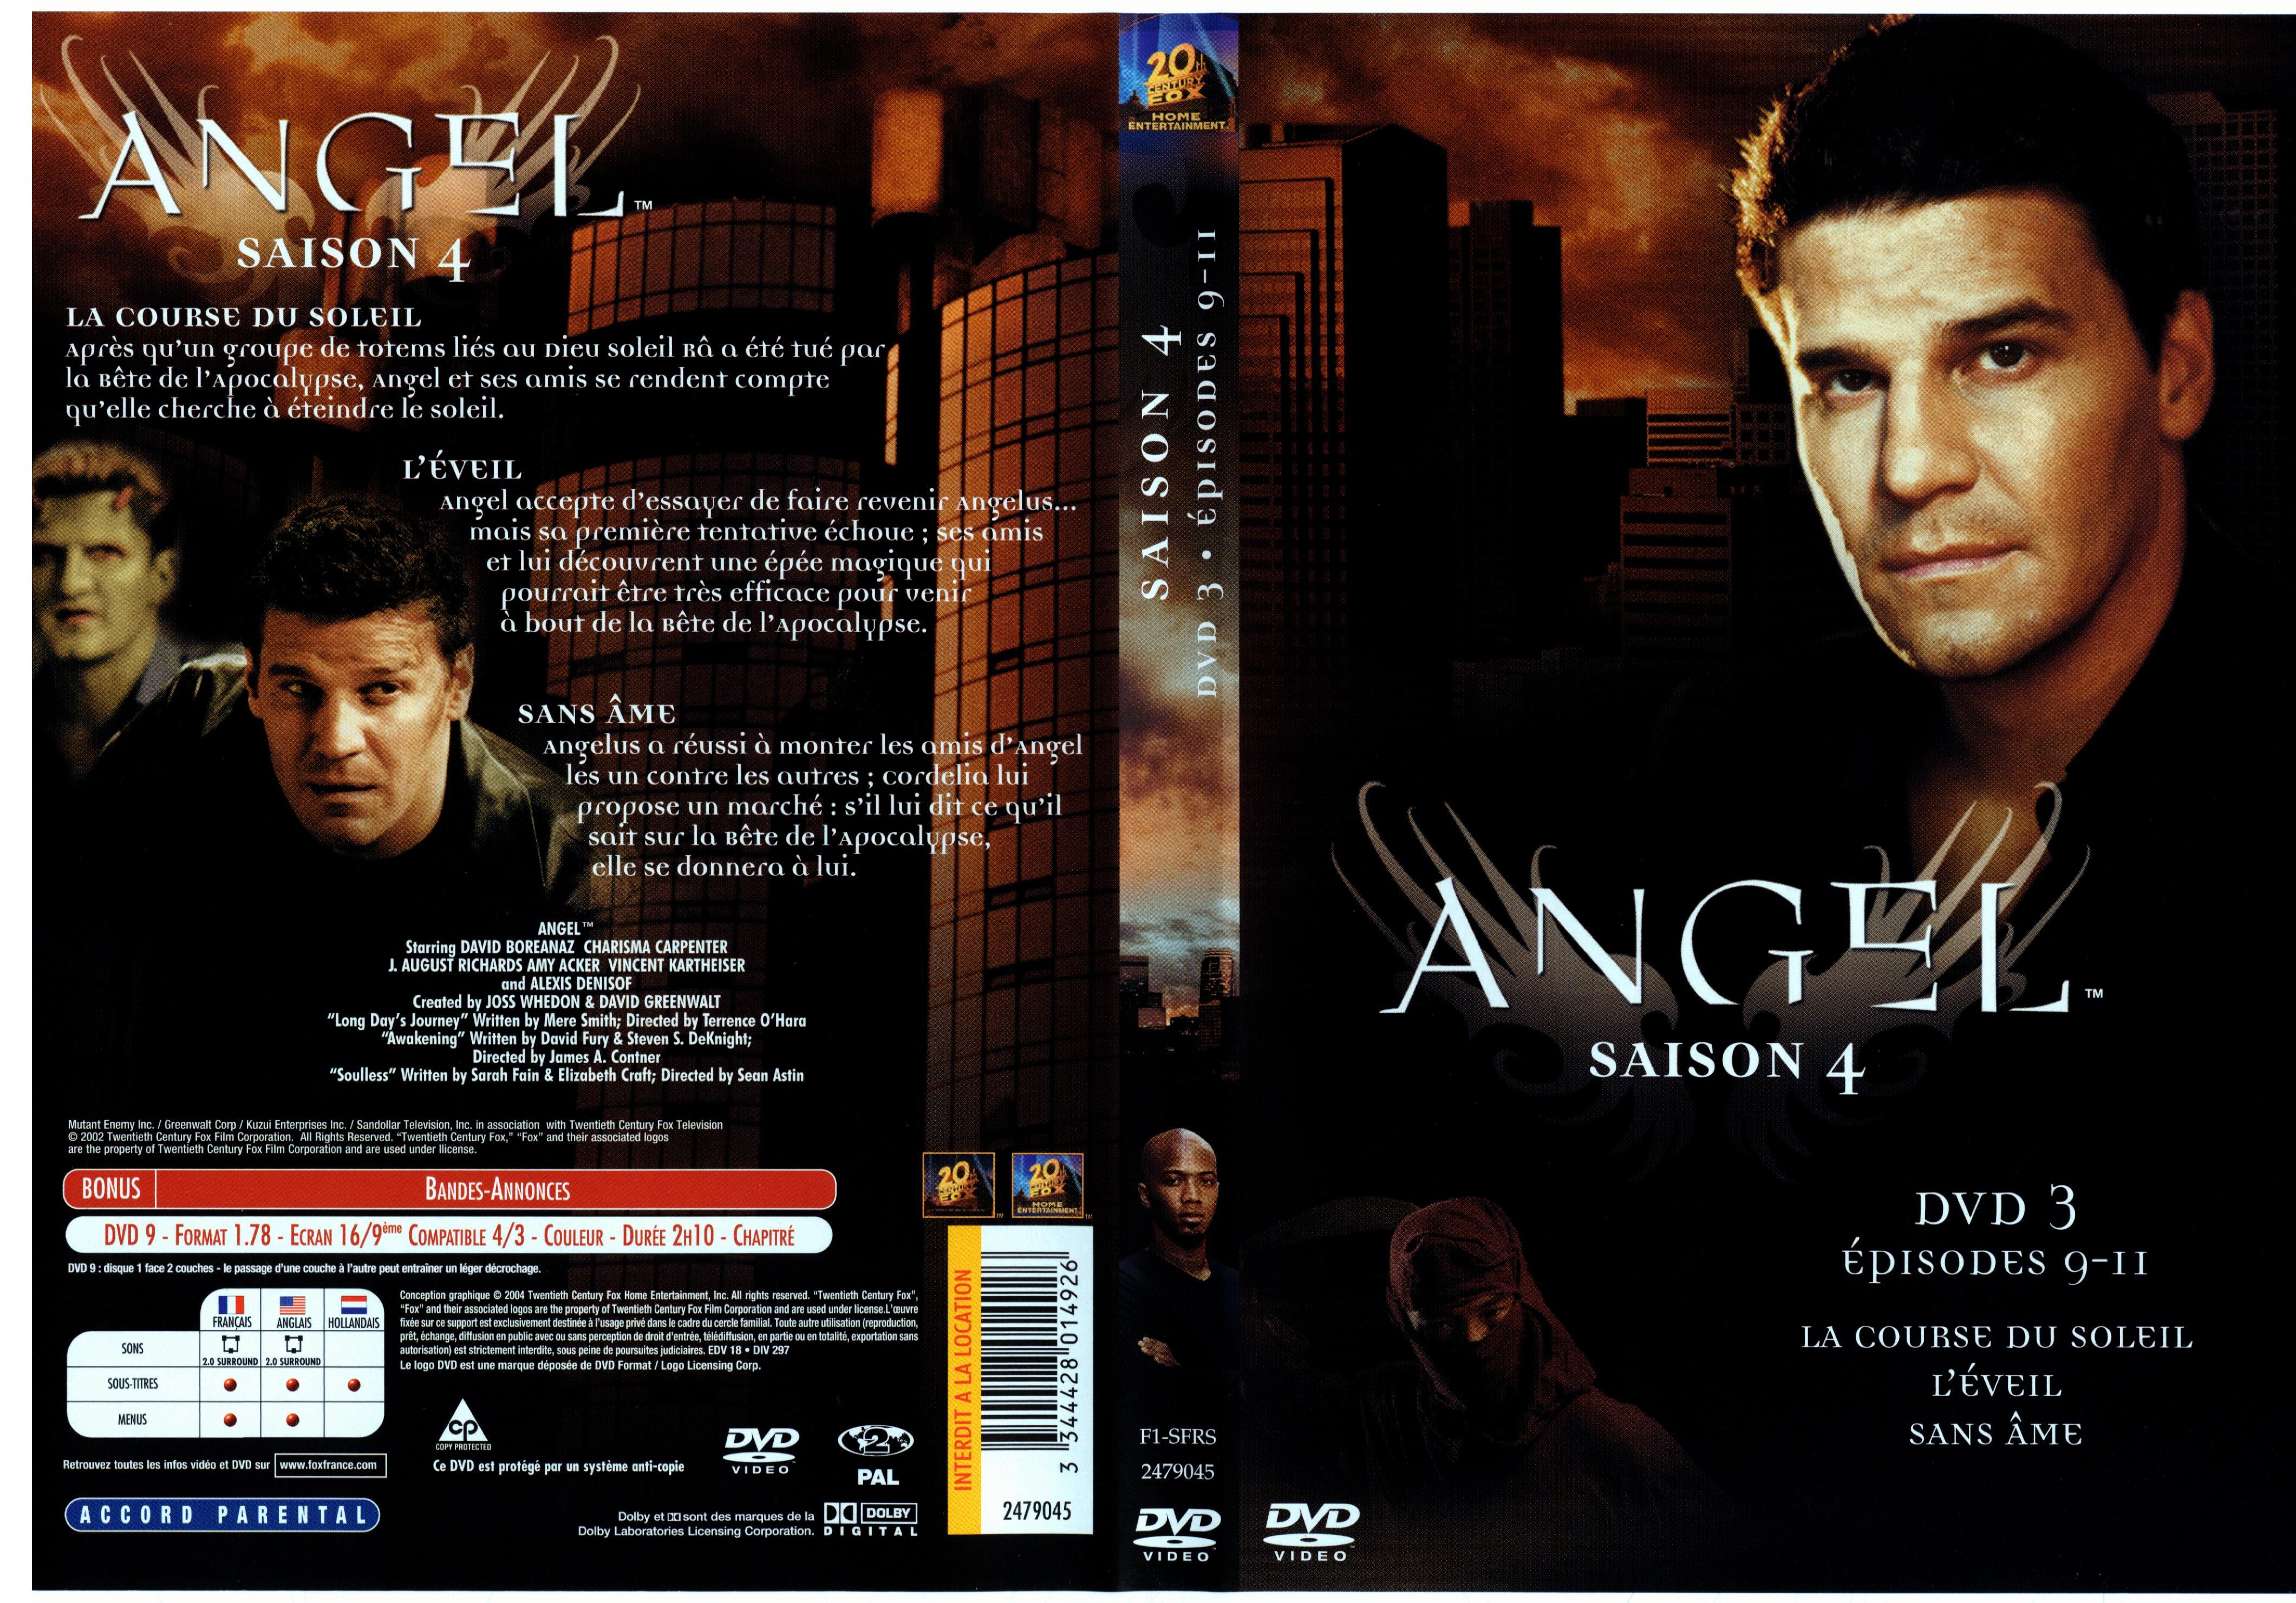 Jaquette DVD Angel Saison 4 dvd 3